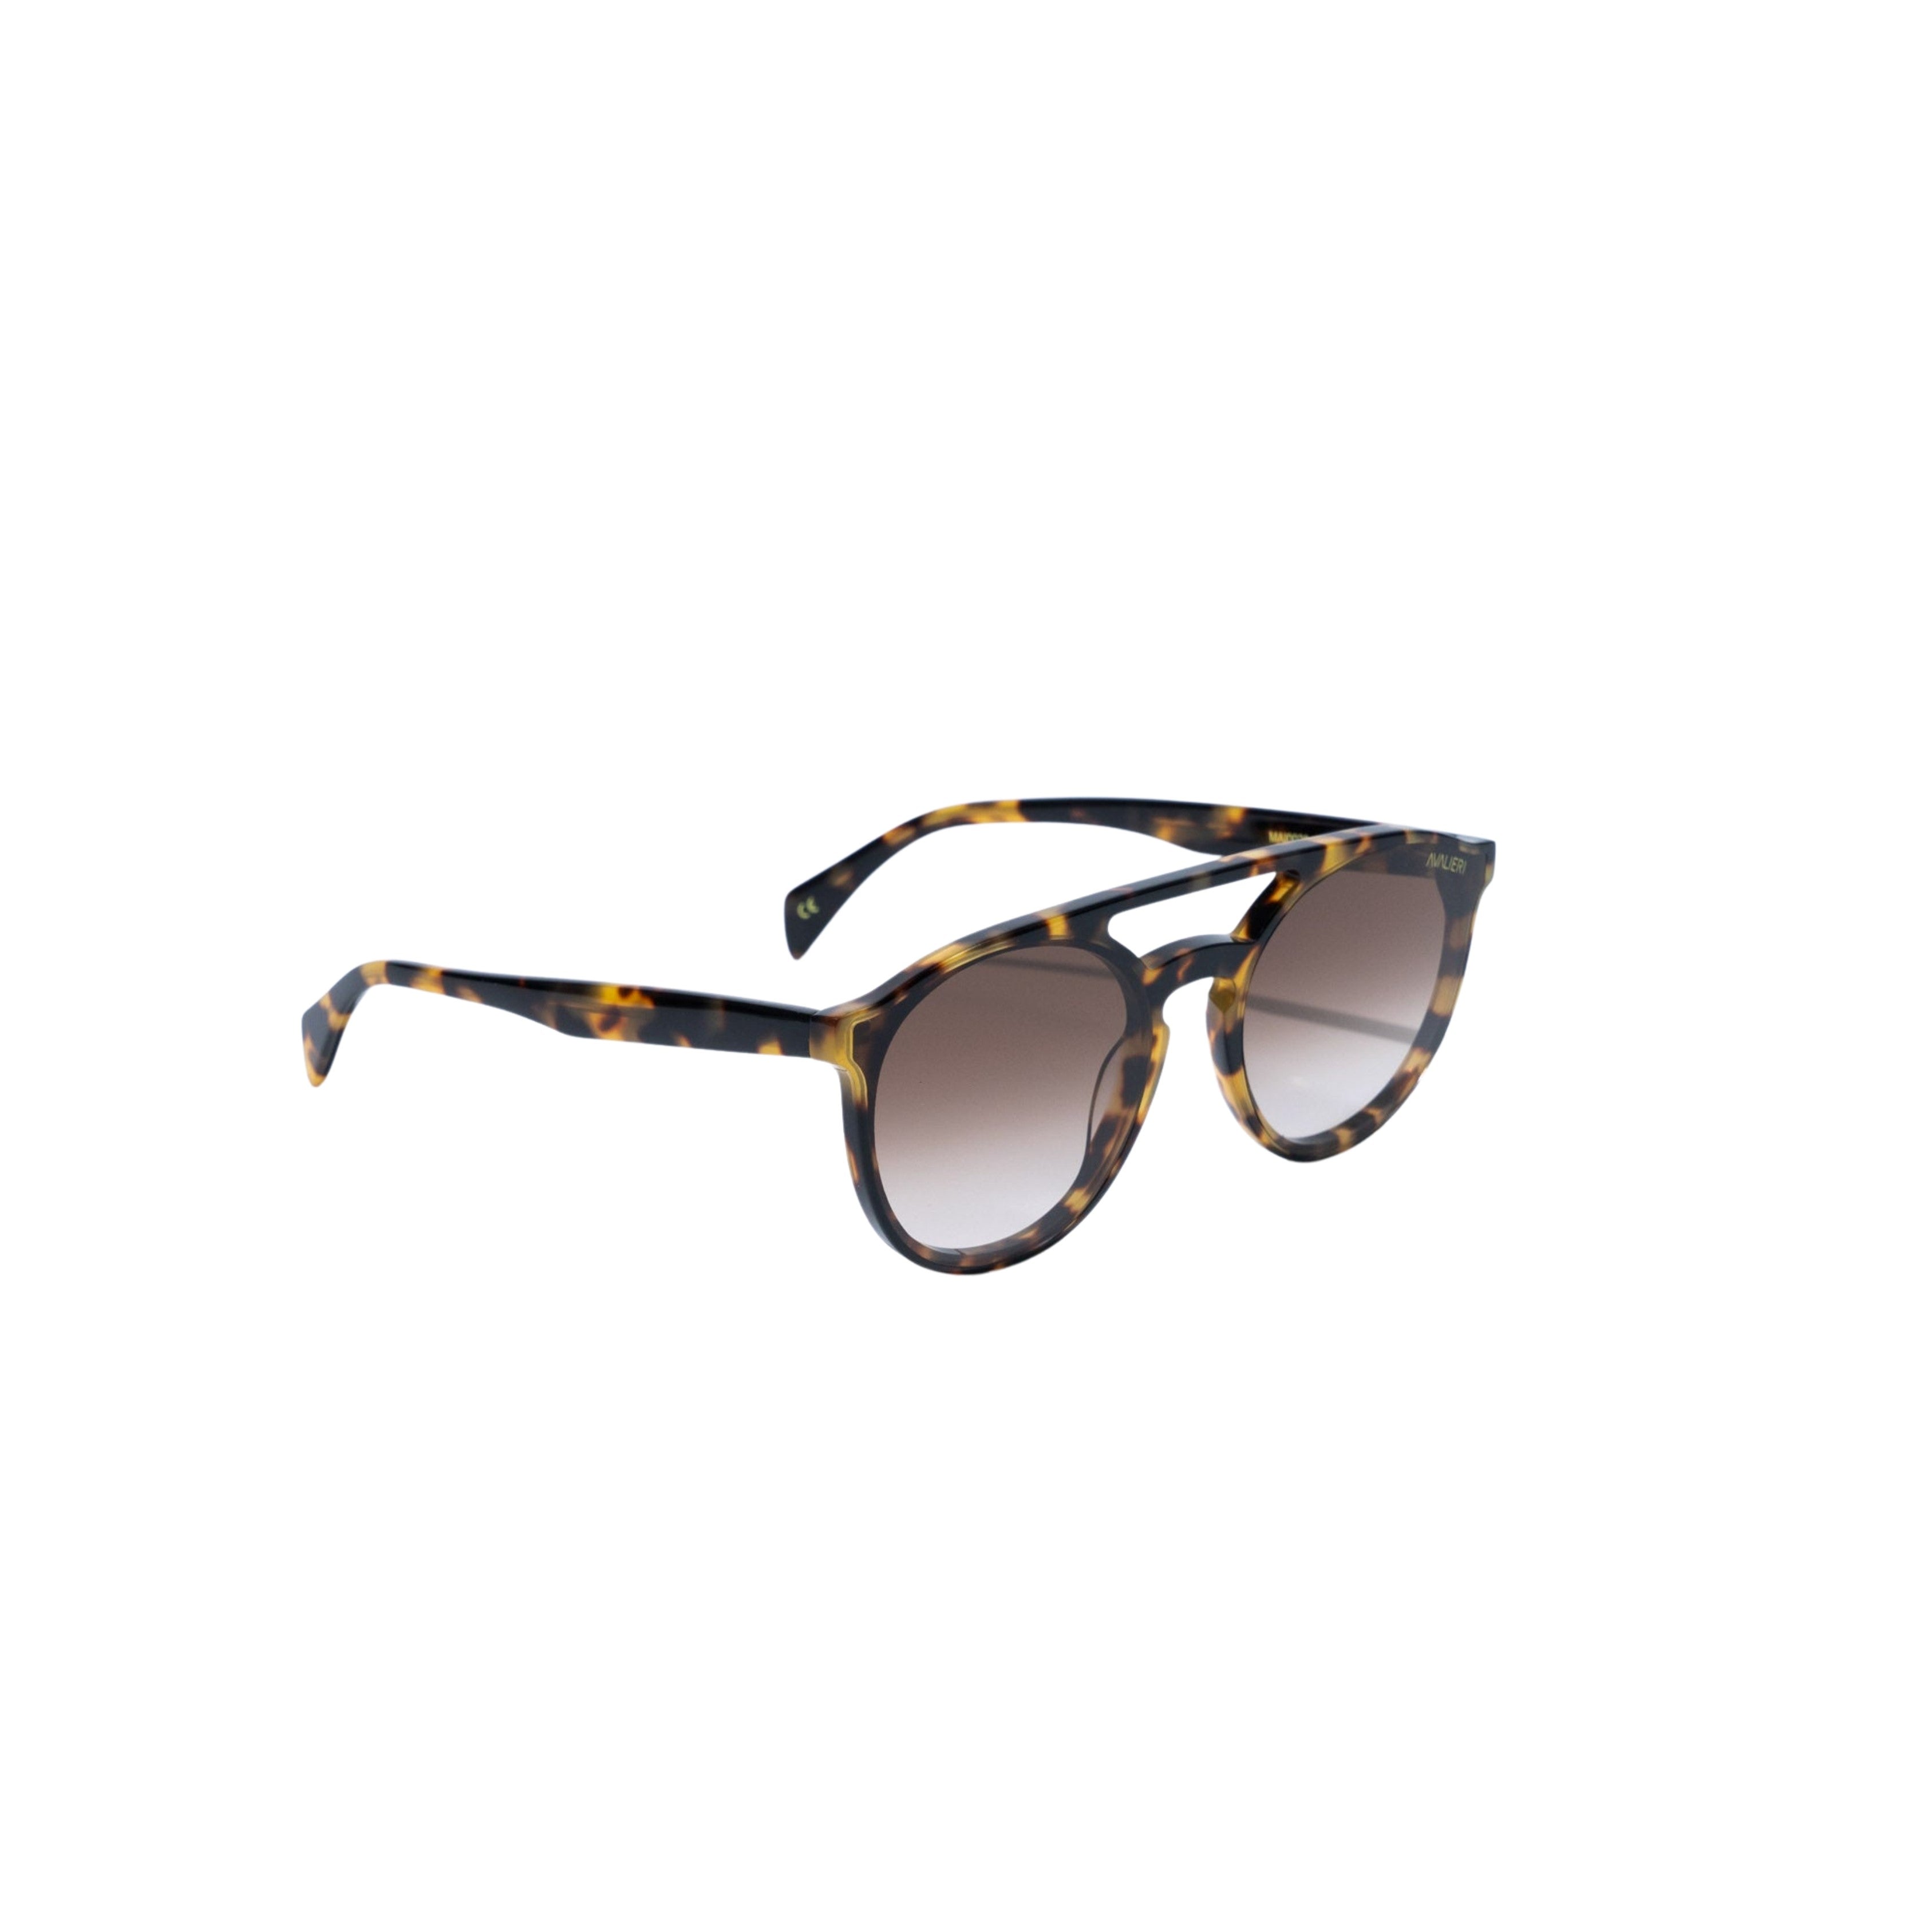 Avalieri Brown Sunglasses for Men and Women - AVSG-0005